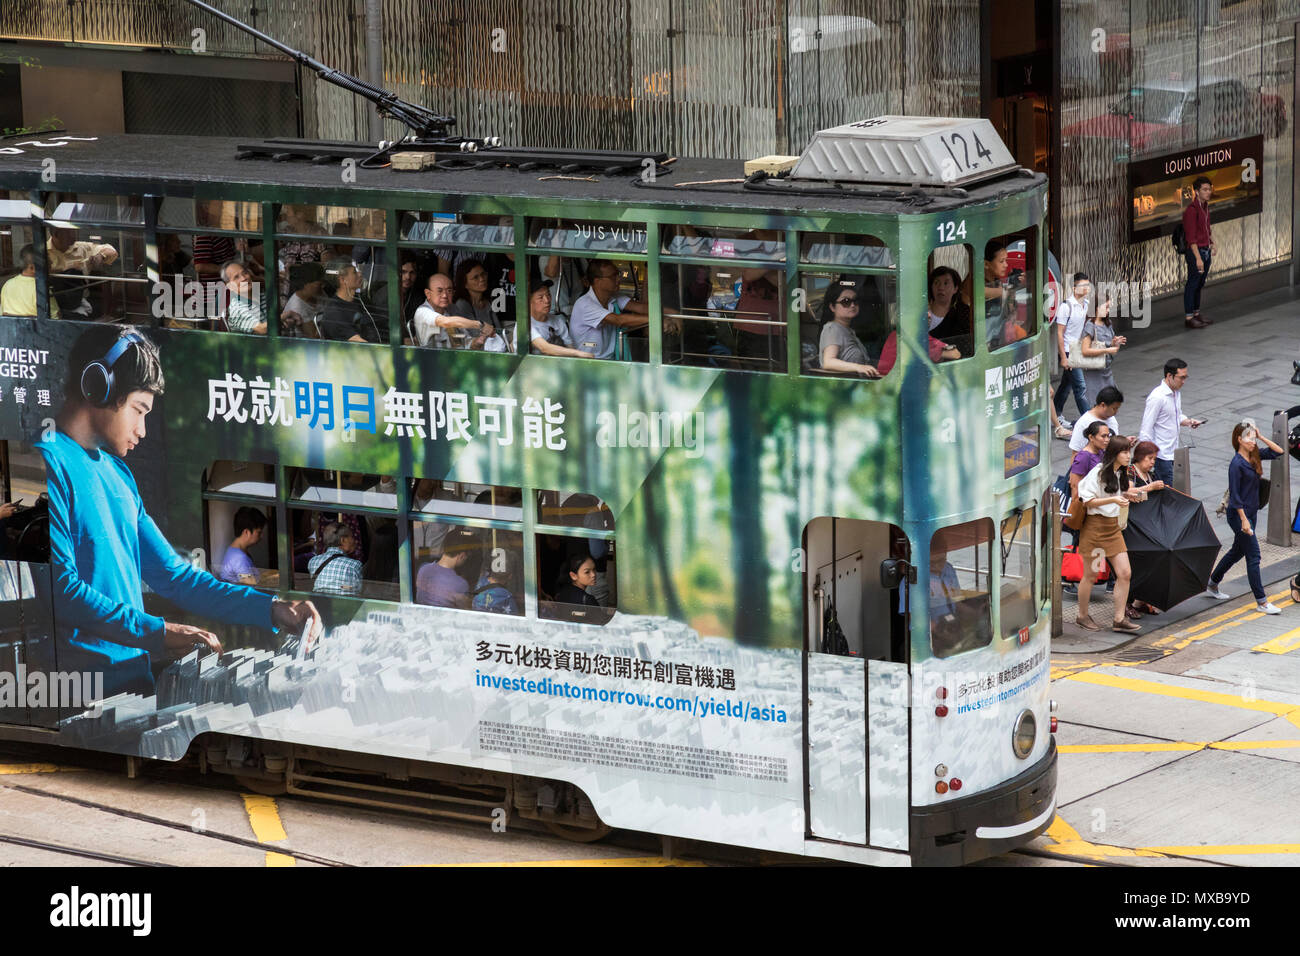 Tram and passengers in Central, Hong Kong, SAR, China Stock Photo